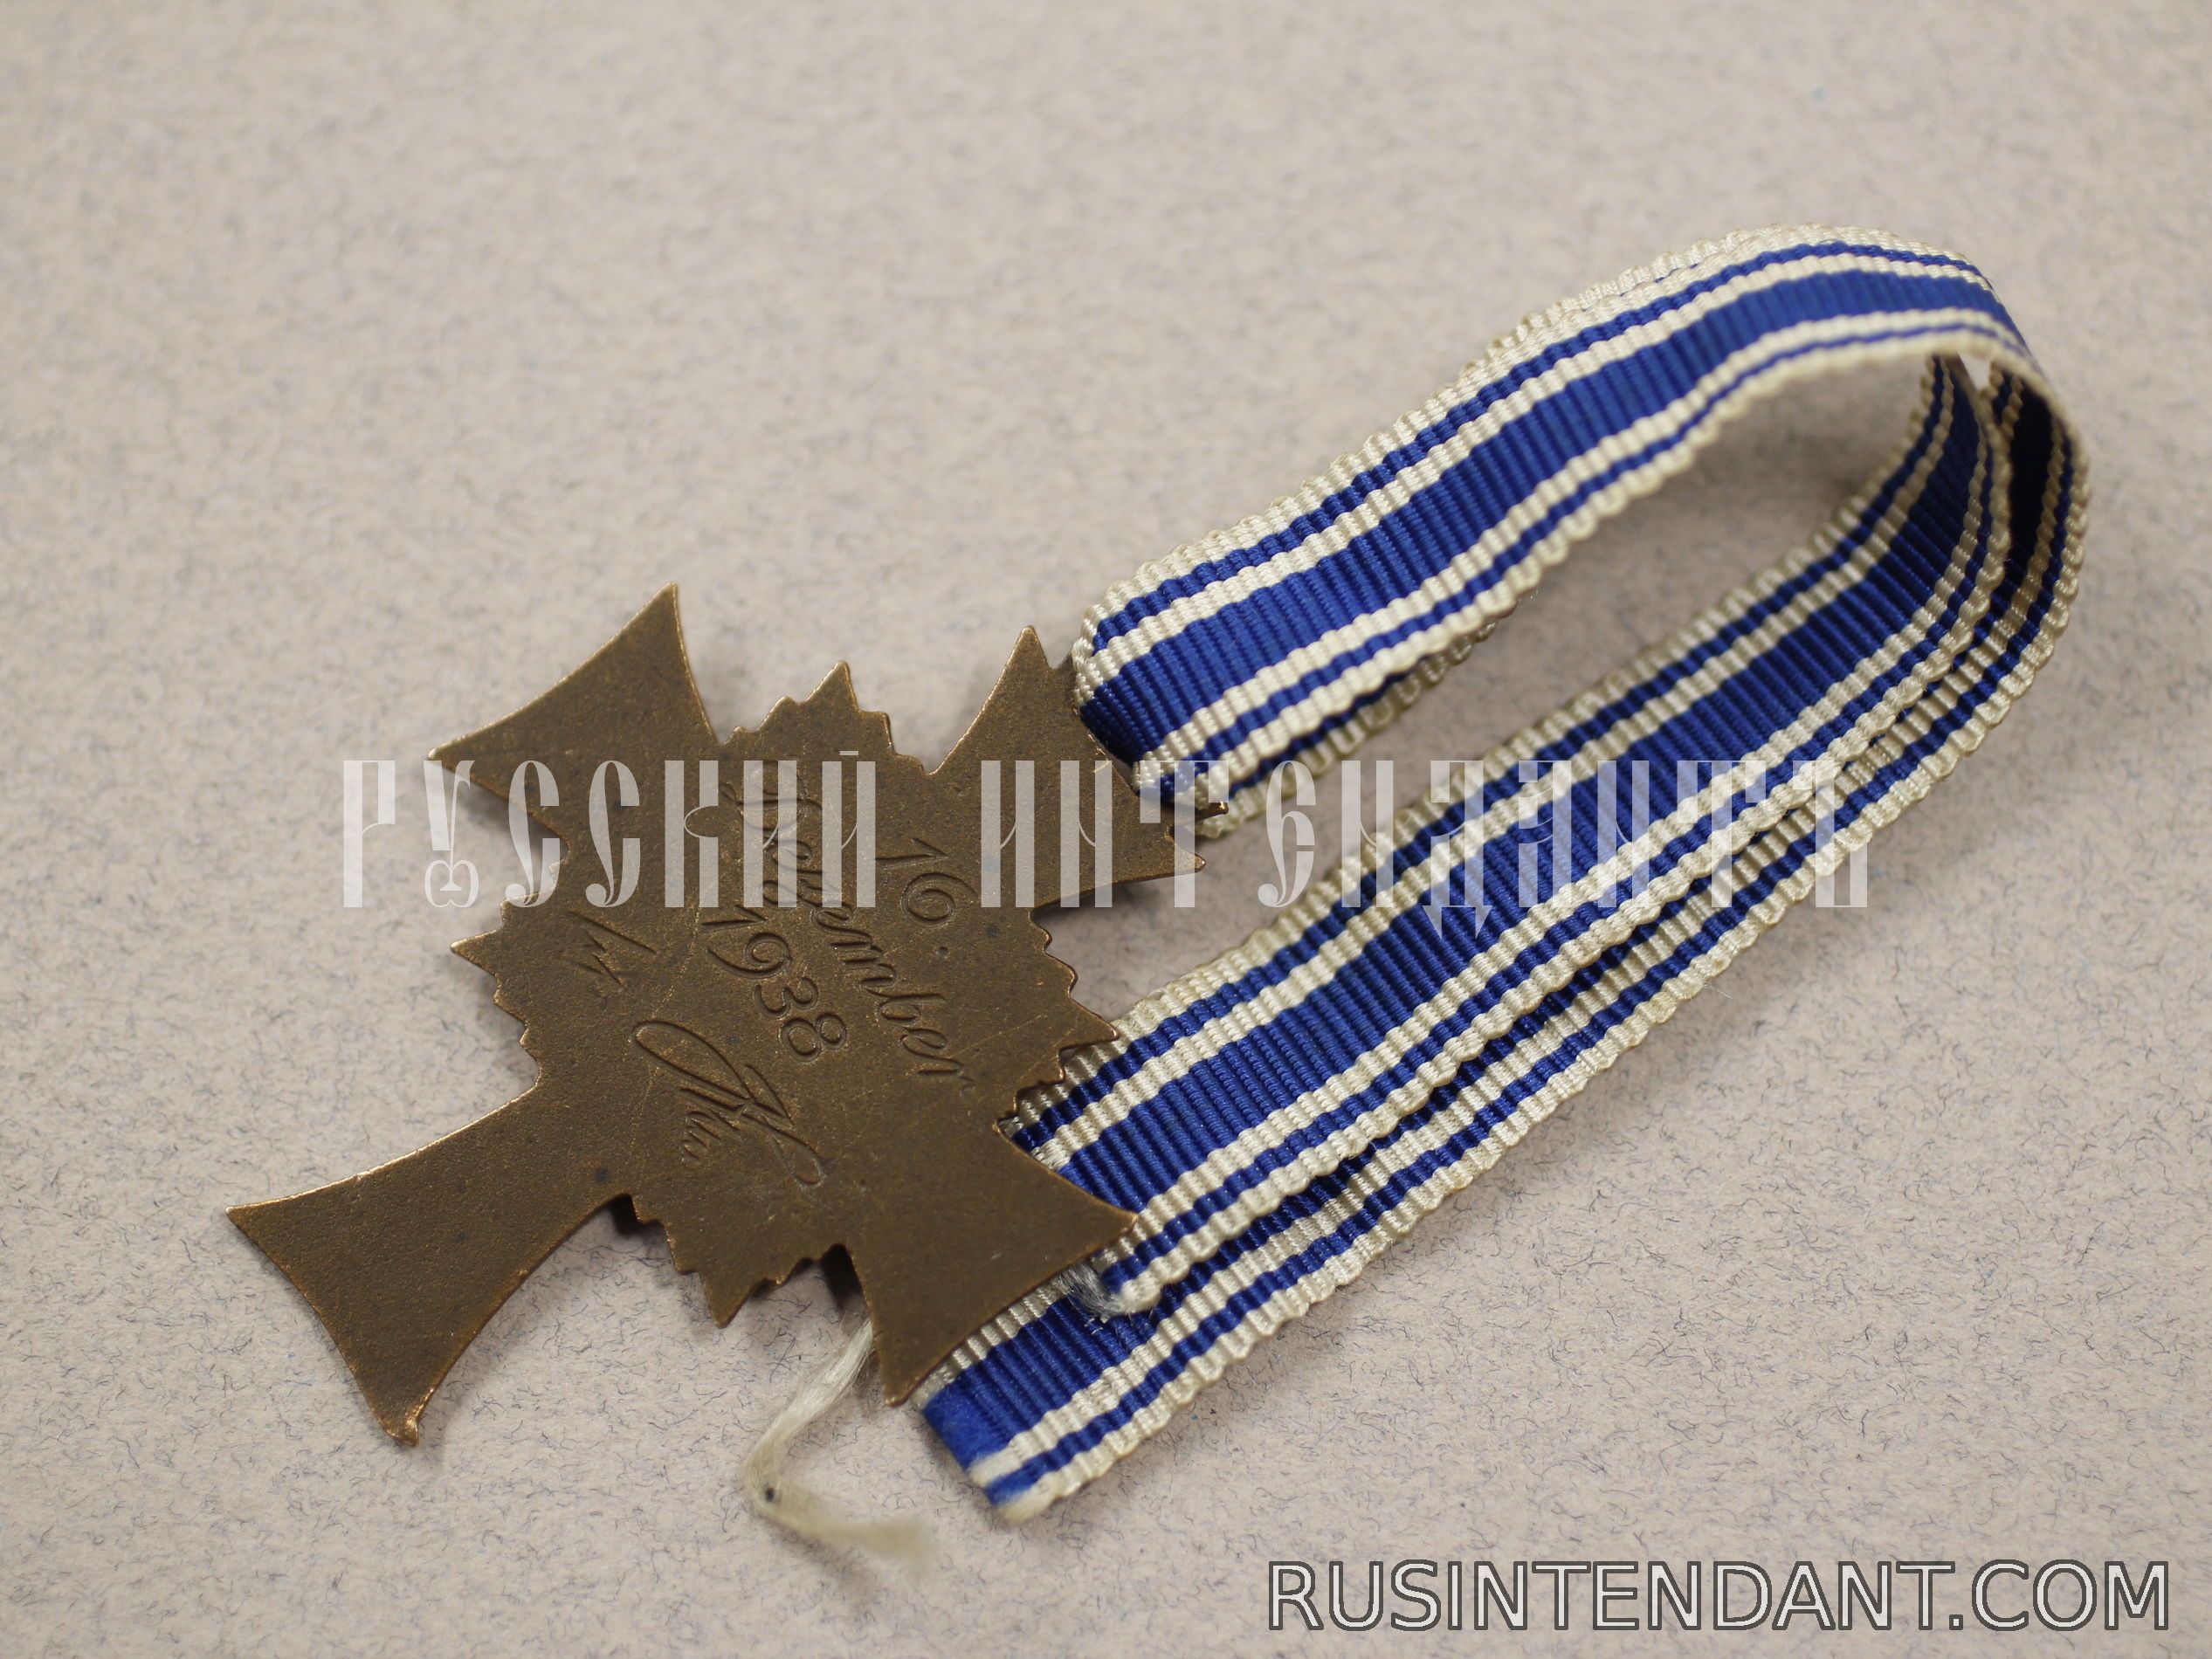 Фото 4: Почетный крест Немецкой матери "Бронзовый" 